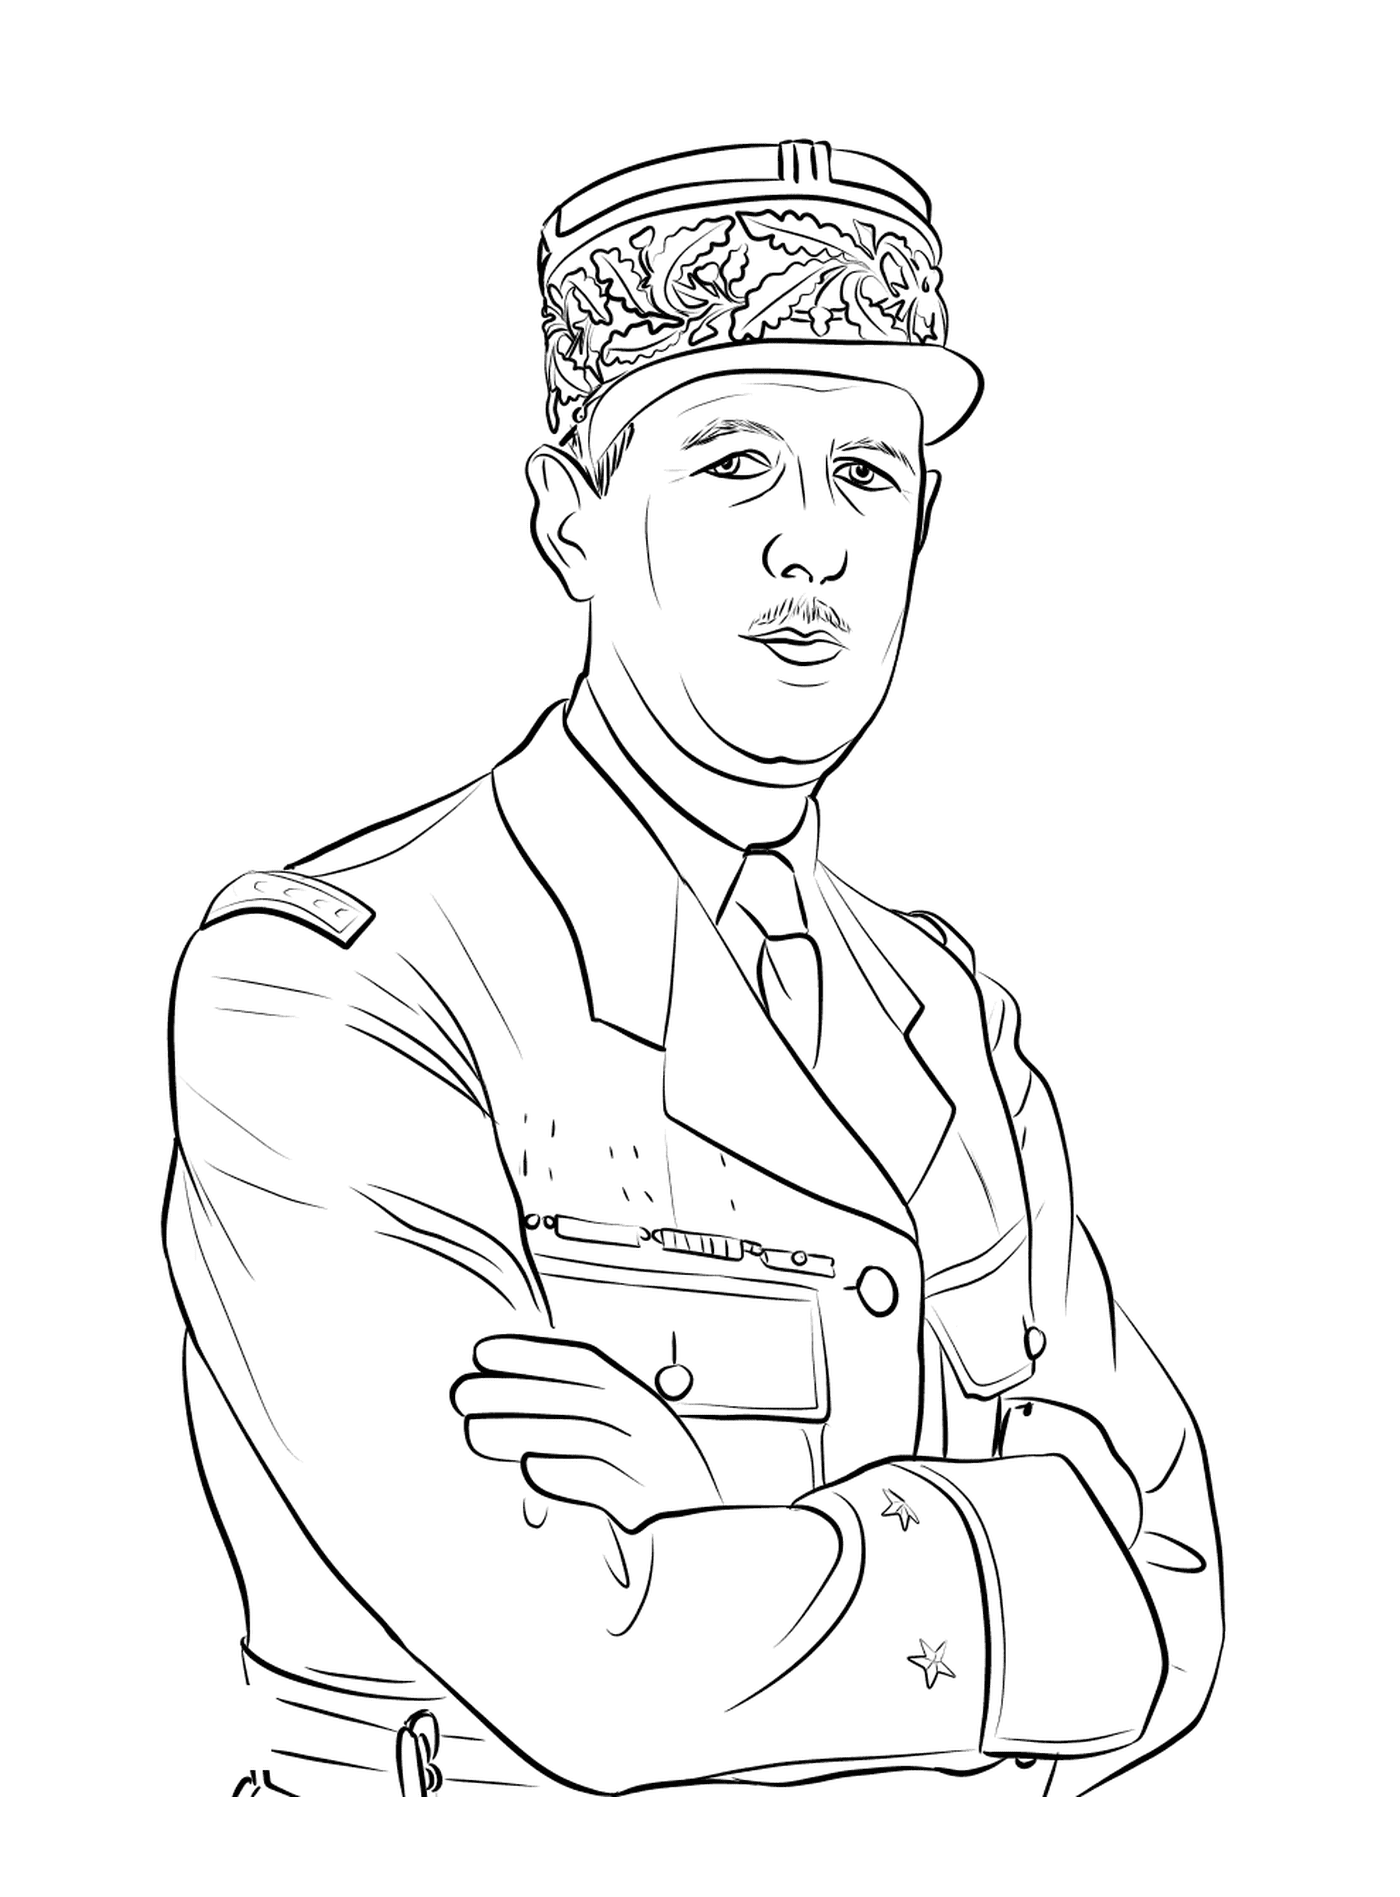  Charles de Gaulle, jefe militar 